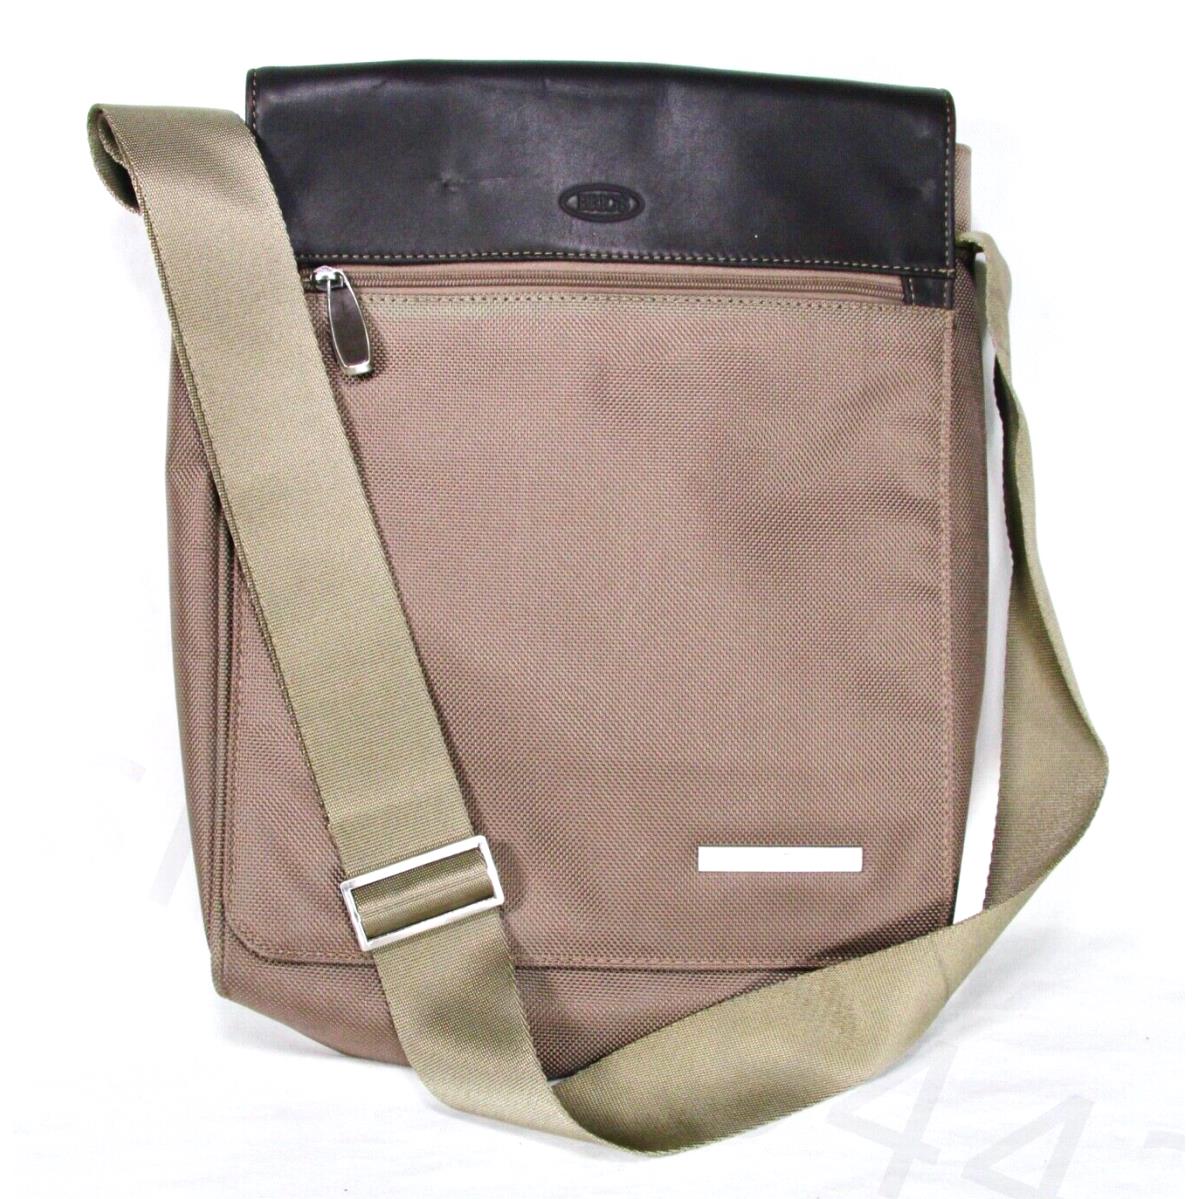 Bric`s Bric`s Bag Pininfarina Messenger Shoulder Olive Bag Adjustable Strap Gift